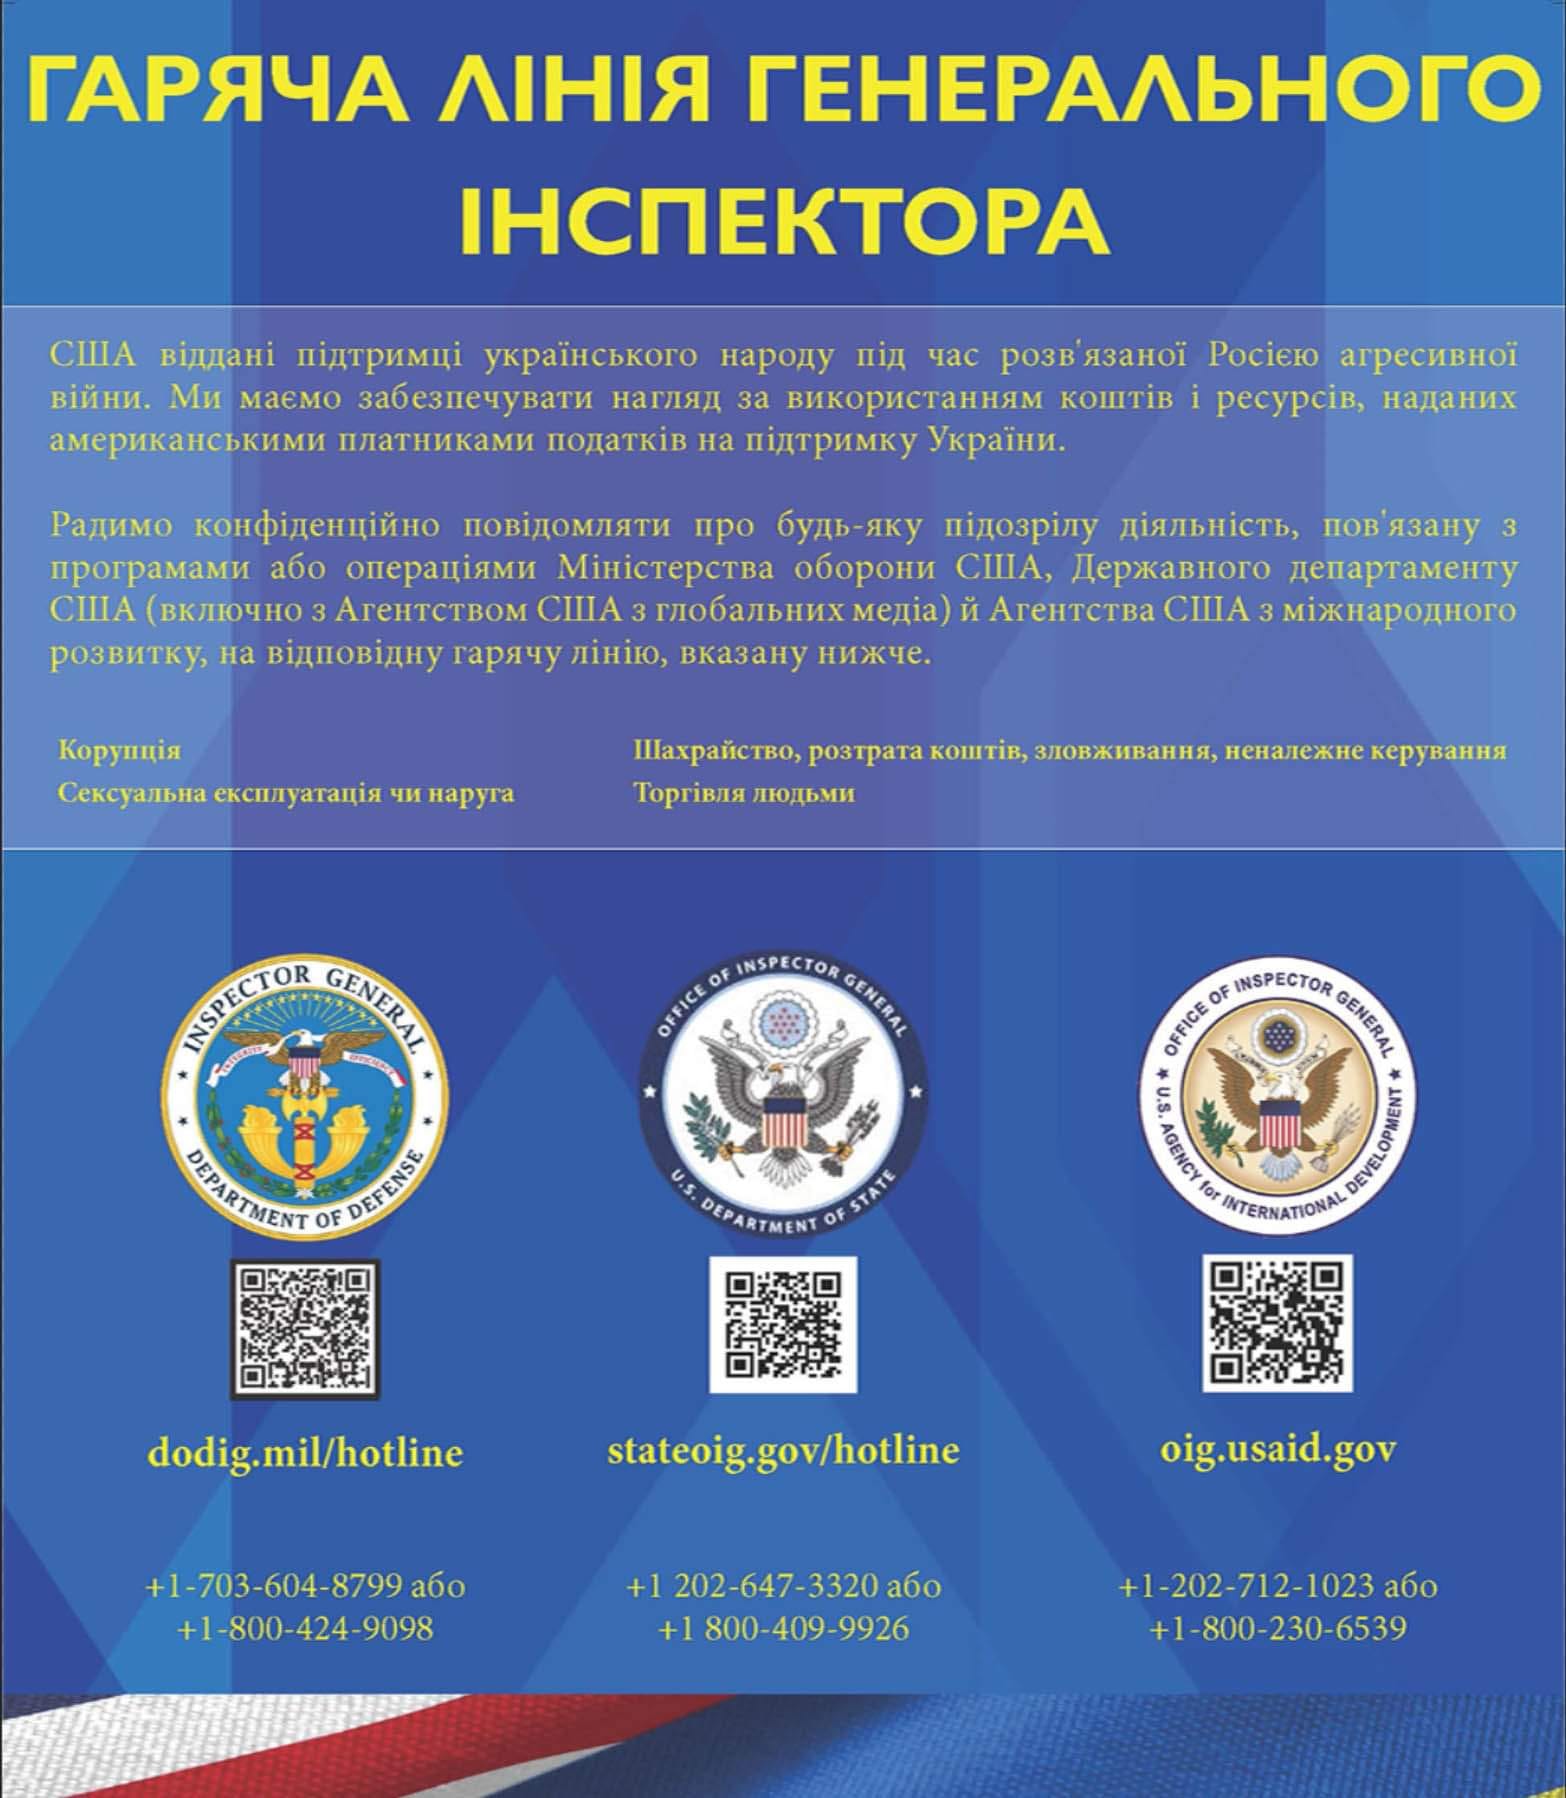 США открыли горячую линию для борьбы с коррупцией в Украине и направили генеральных инспекторов. НОМЕРА ТЕЛЕФОНОВ 01